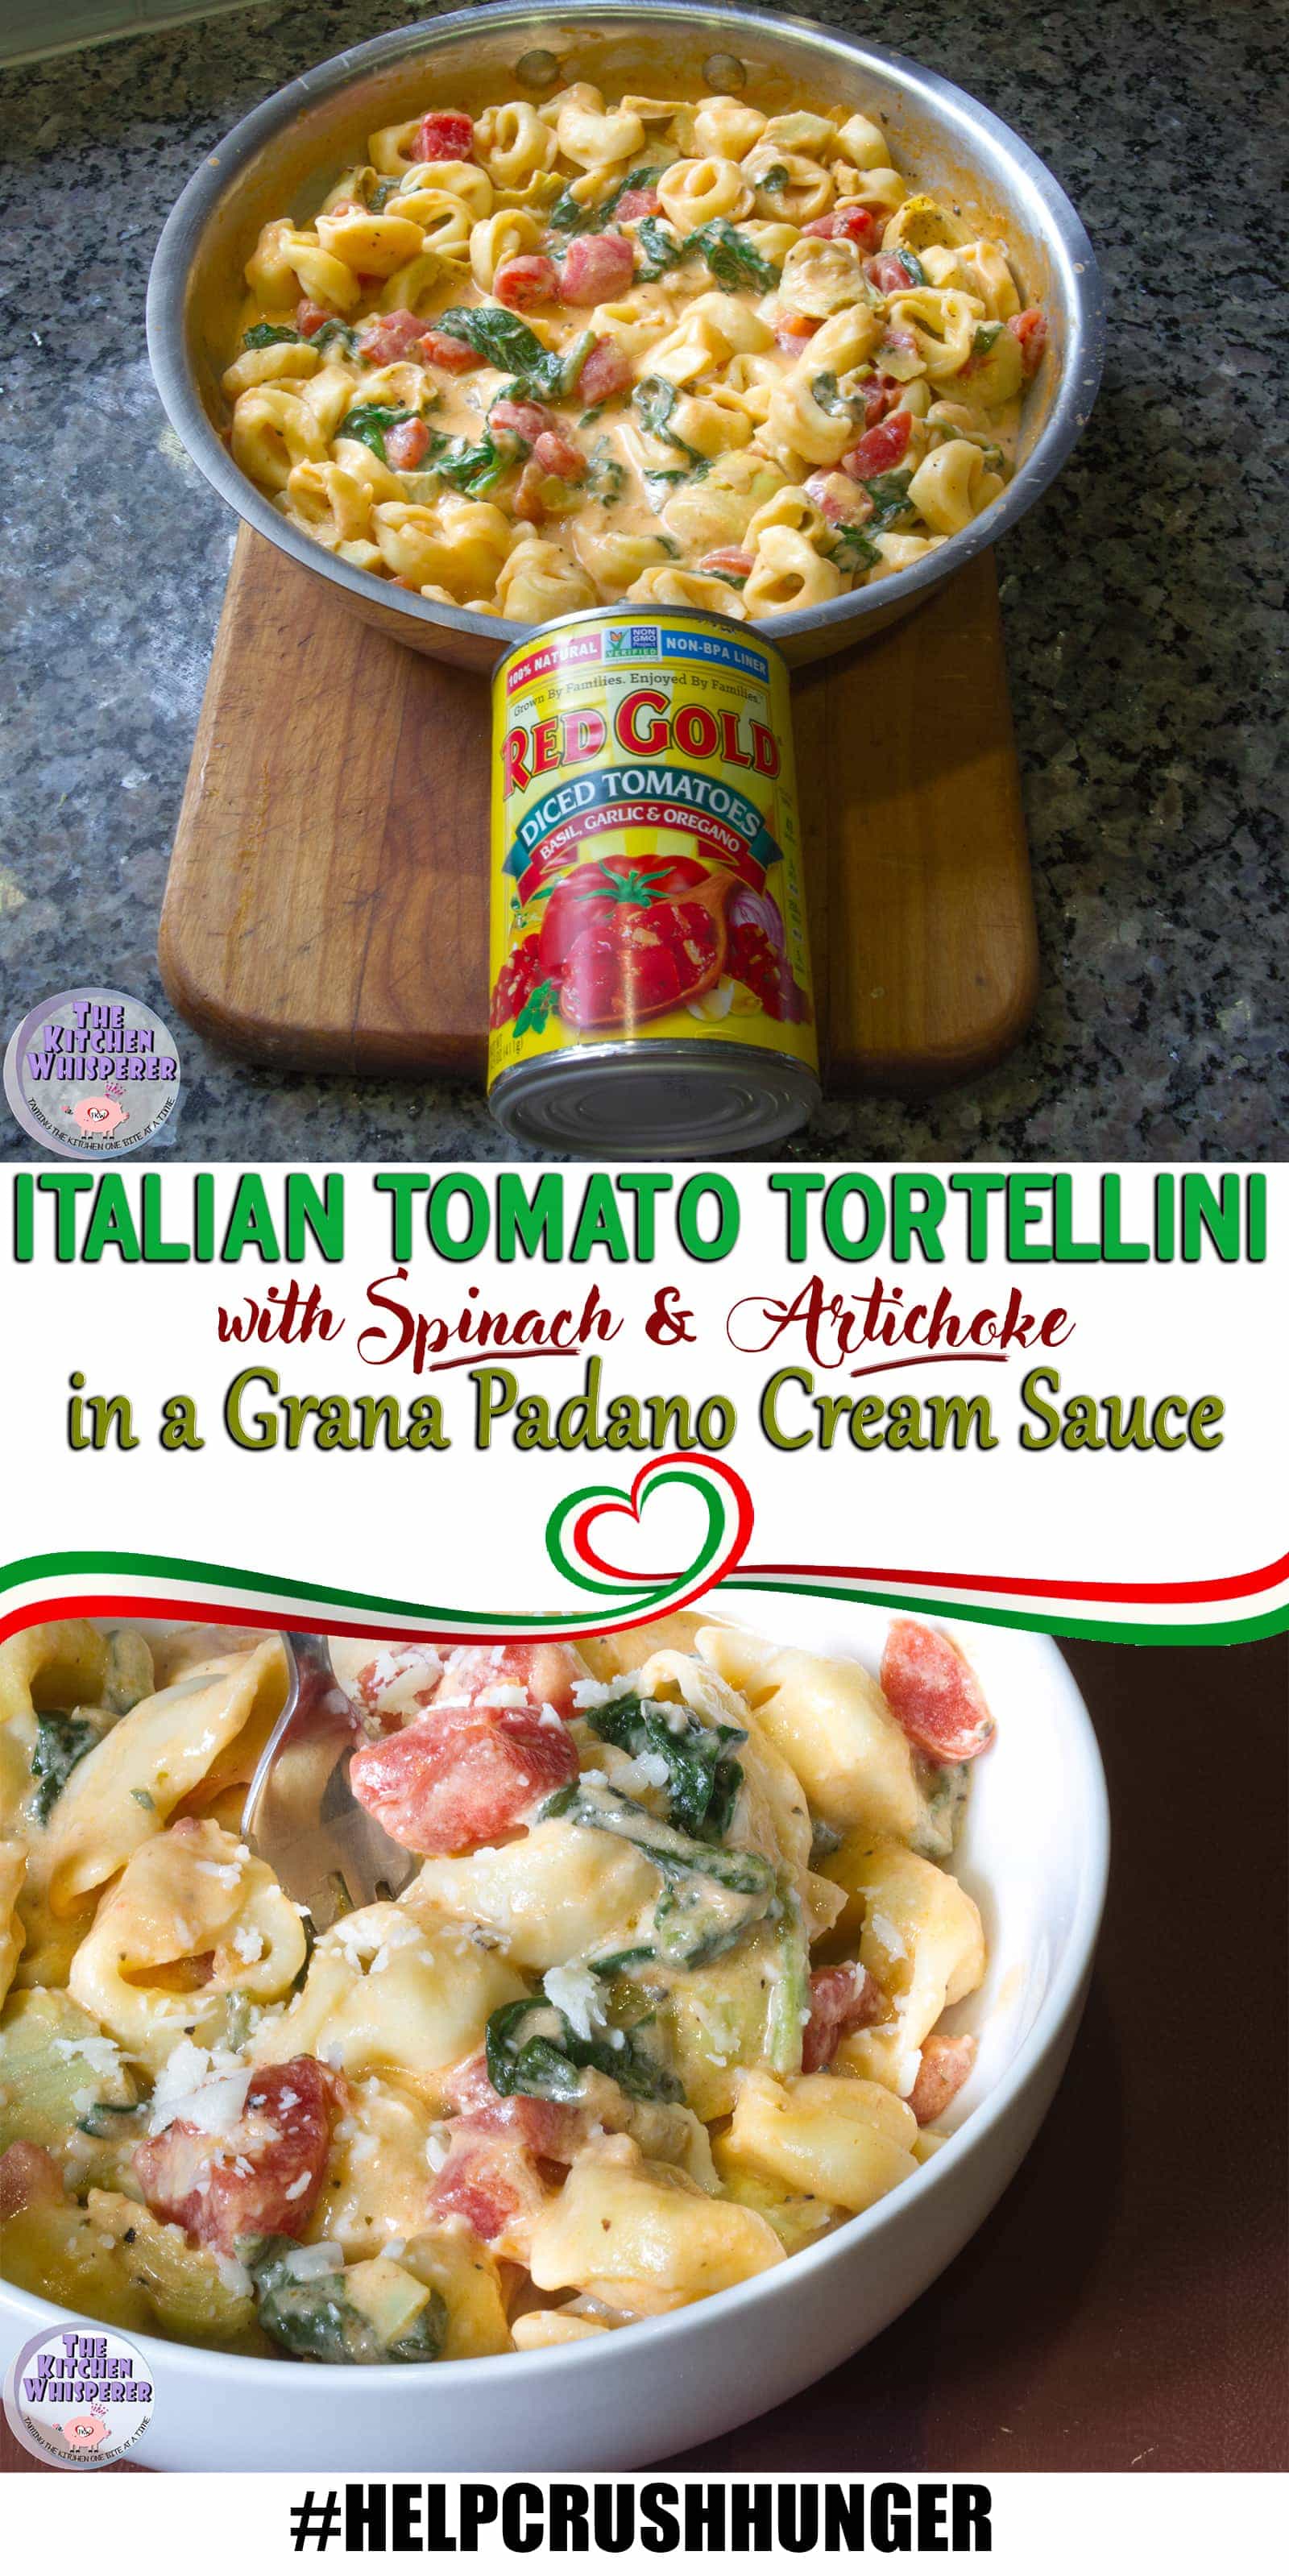 Italian Tomato Tortellini with Spinach & Artichokes in a Grana Padano Cream Sauce